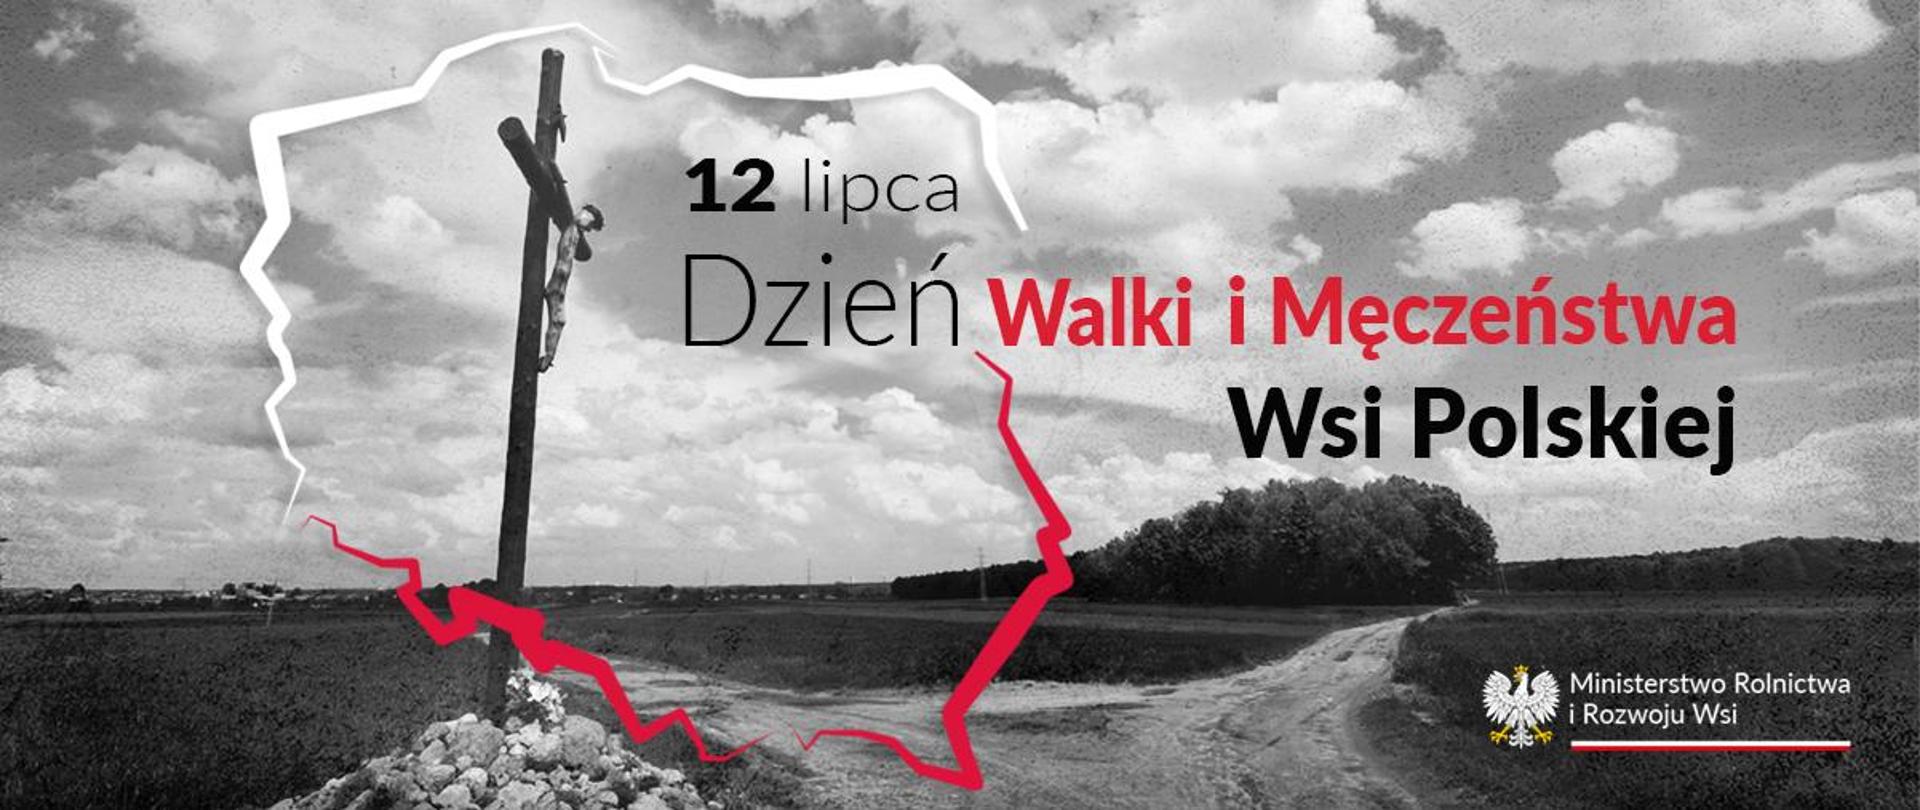 Dzień Męczeństwa Wsi Polskiej 